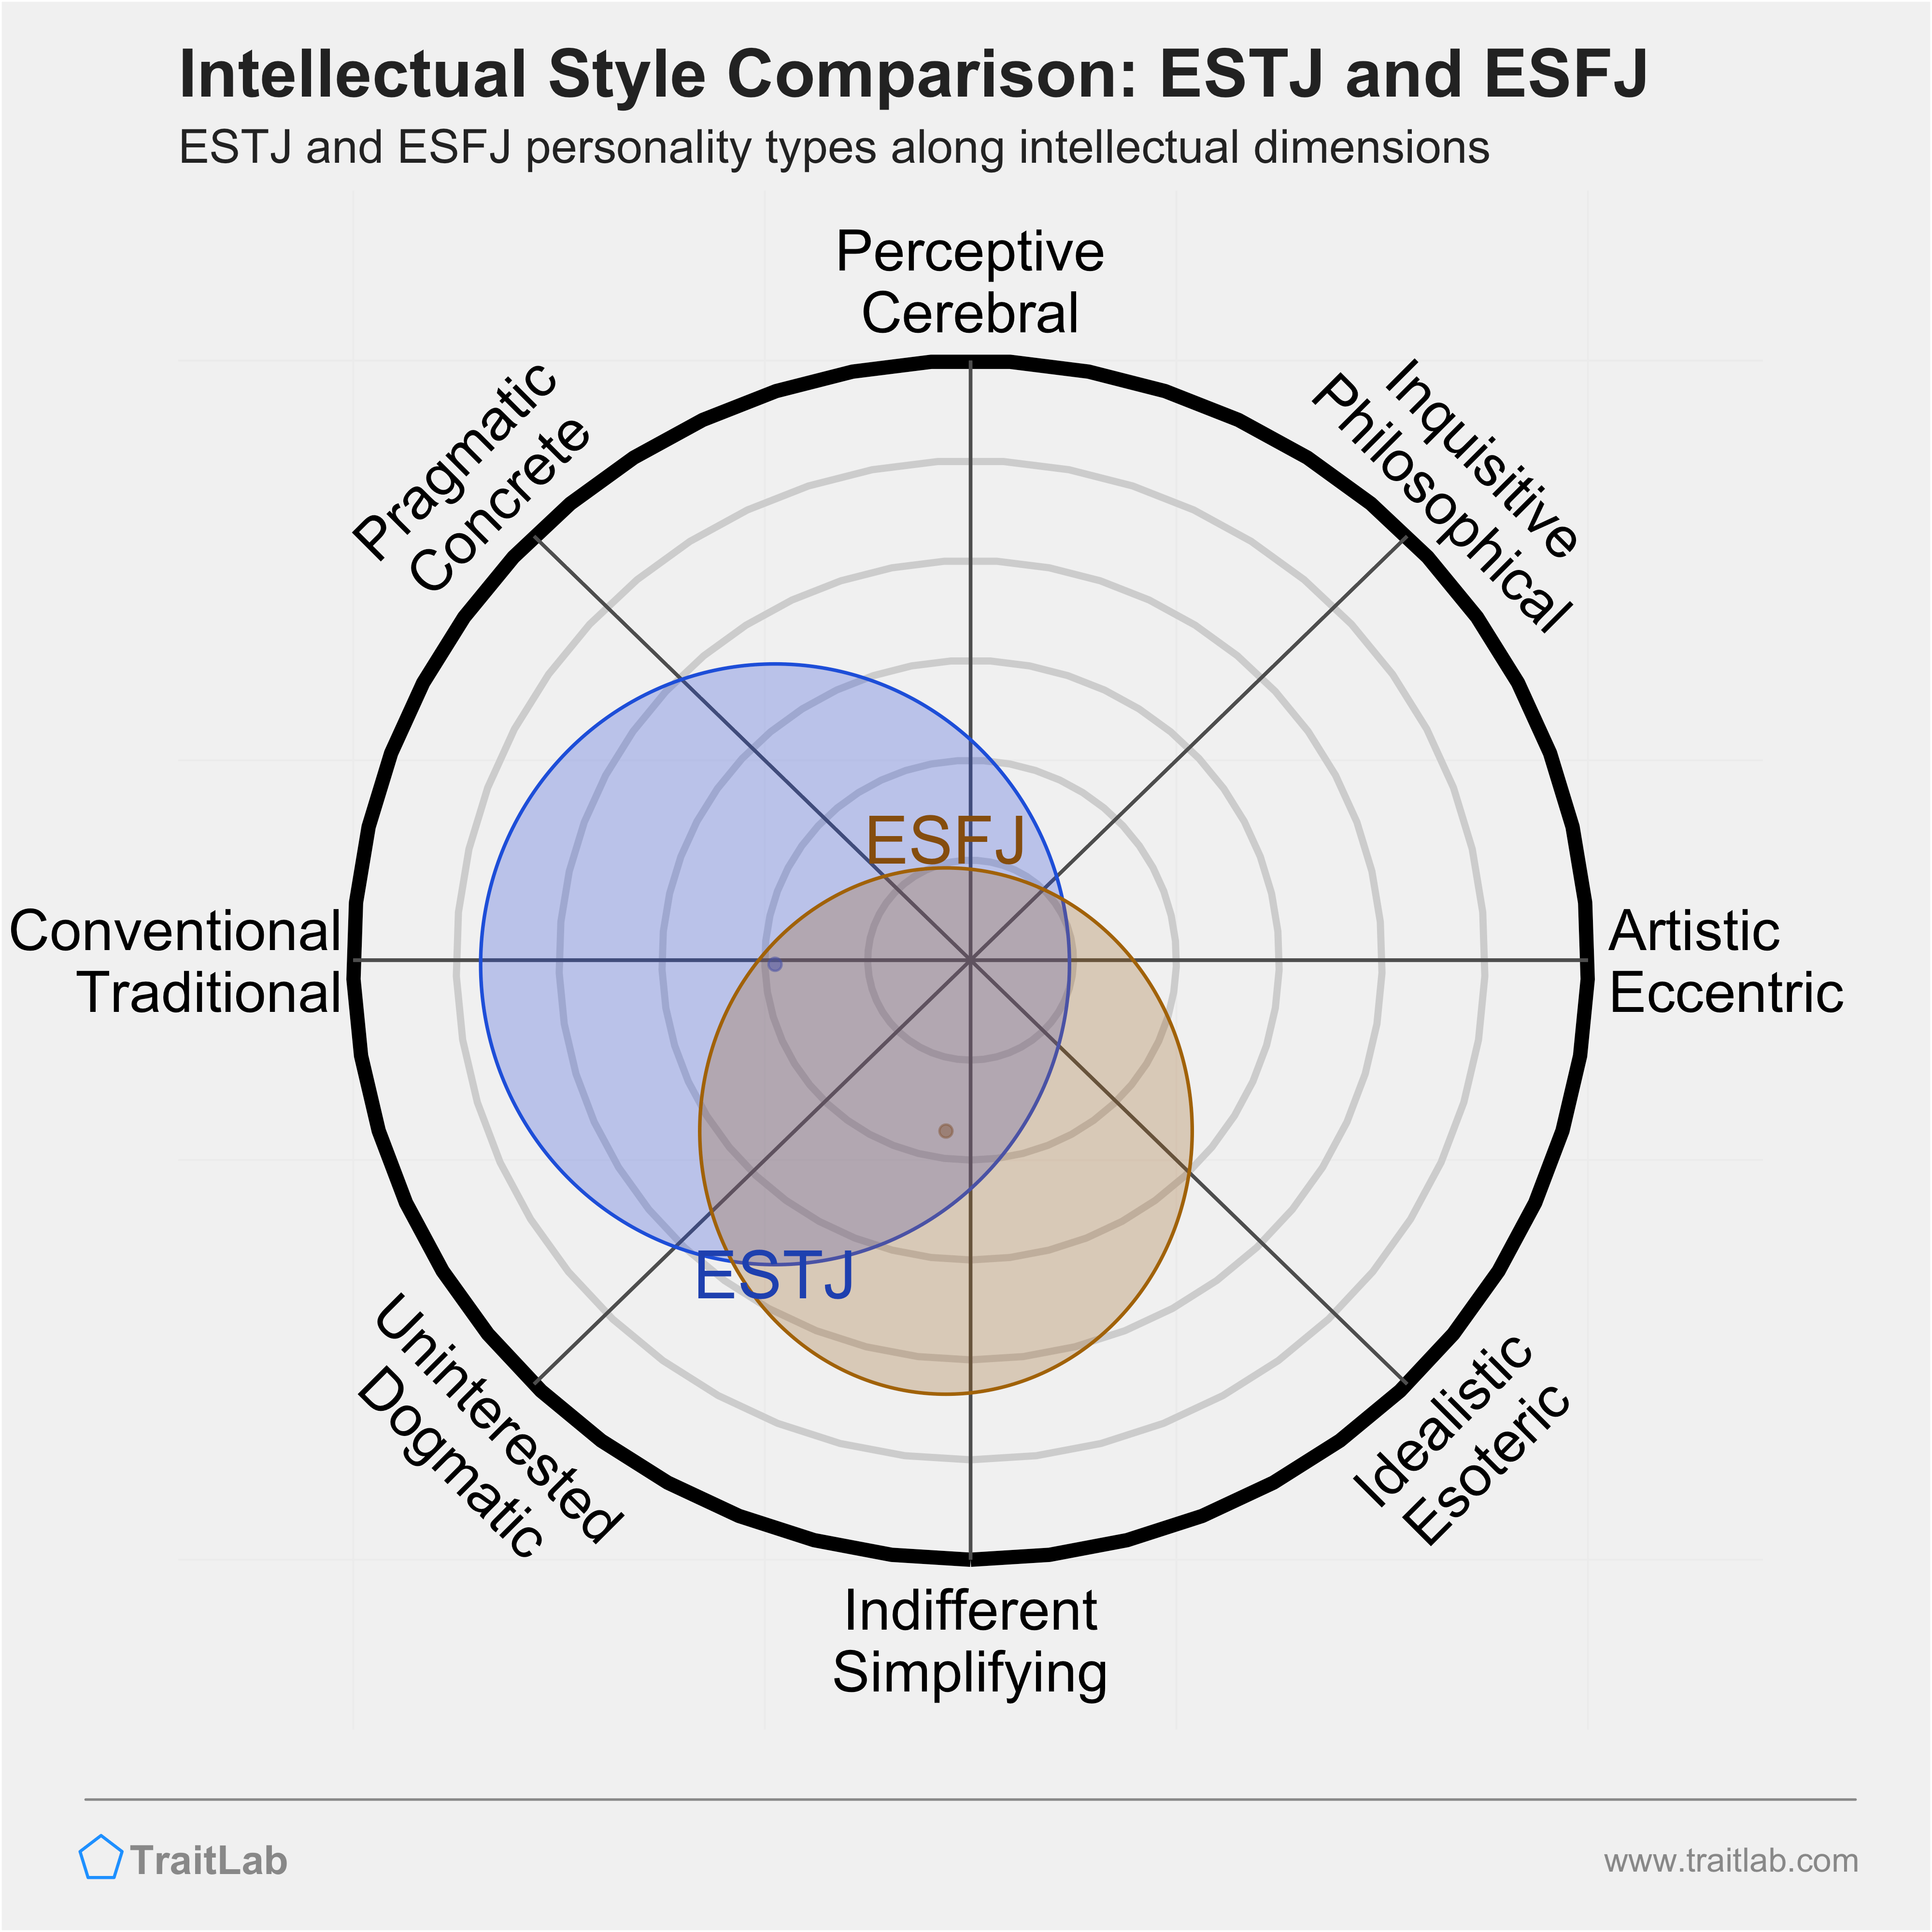 ESTJ and ESFJ comparison across intellectual dimensions